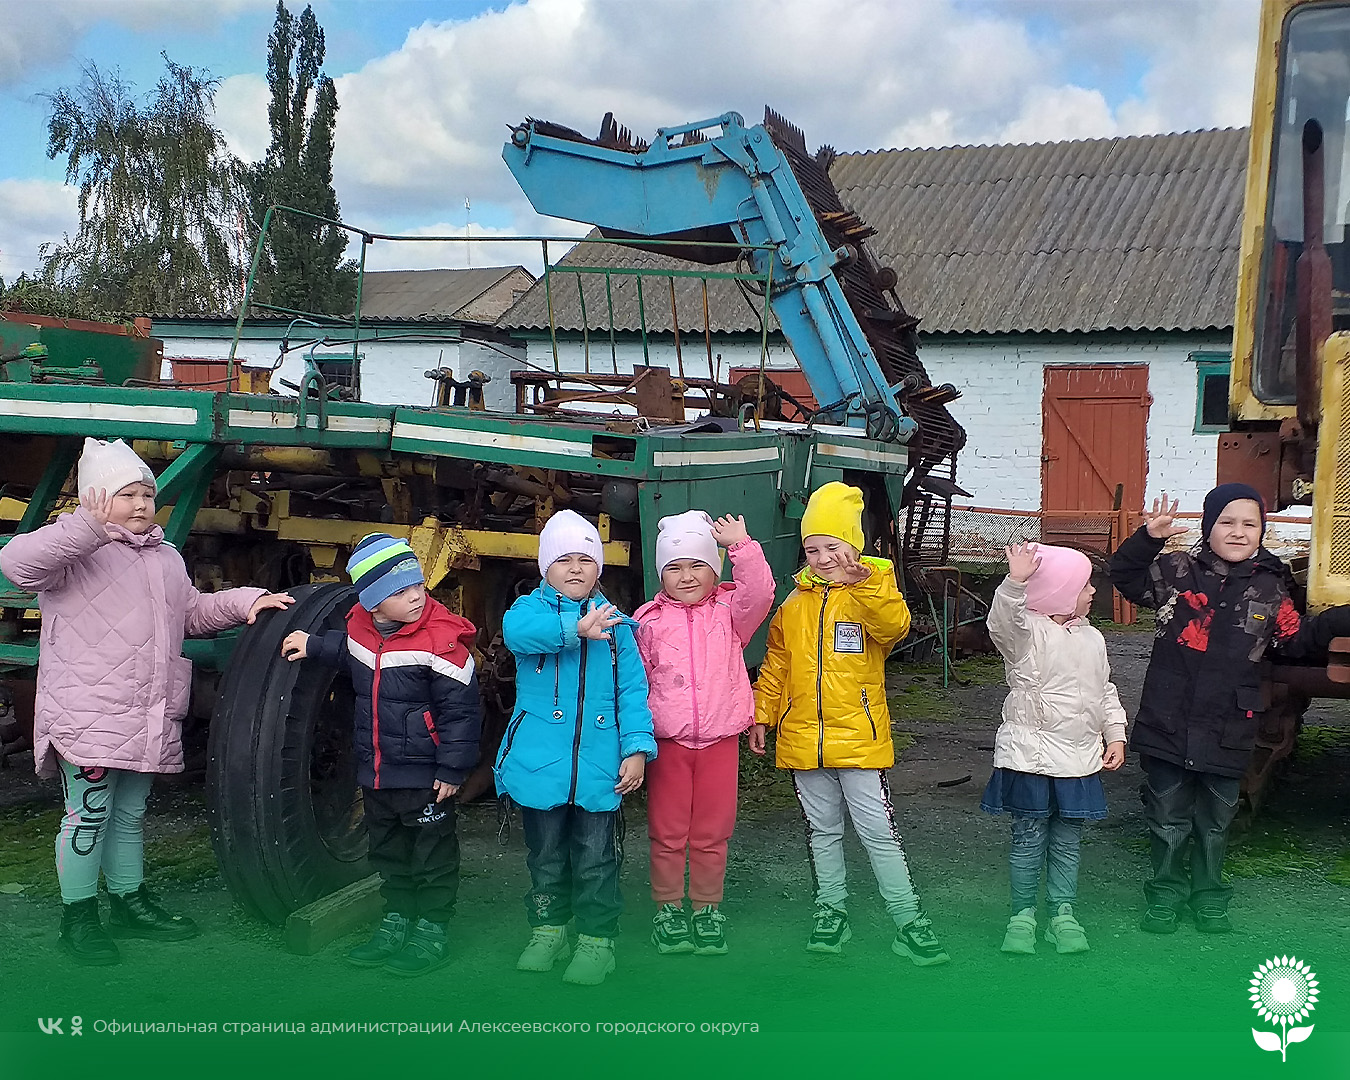 В детских садах Алексеевского городского округа прошёл День работников сельского хозяйства и перерабатывающей промышленности.